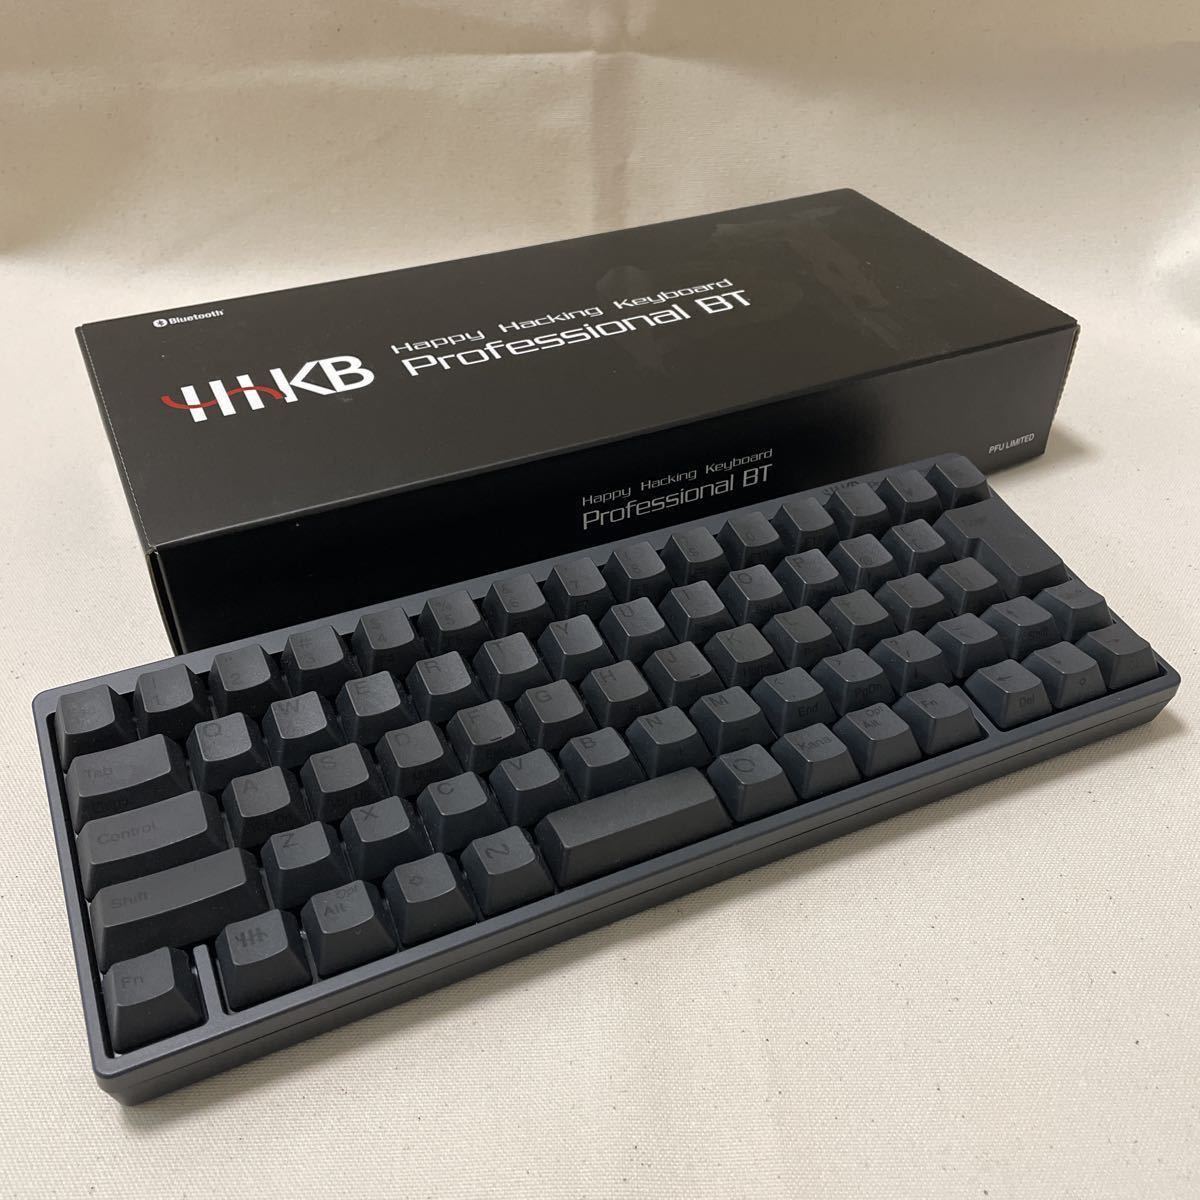 ホット製品 【美品】HHKB Professional Bluetoothキーボード墨 BT PC周辺機器